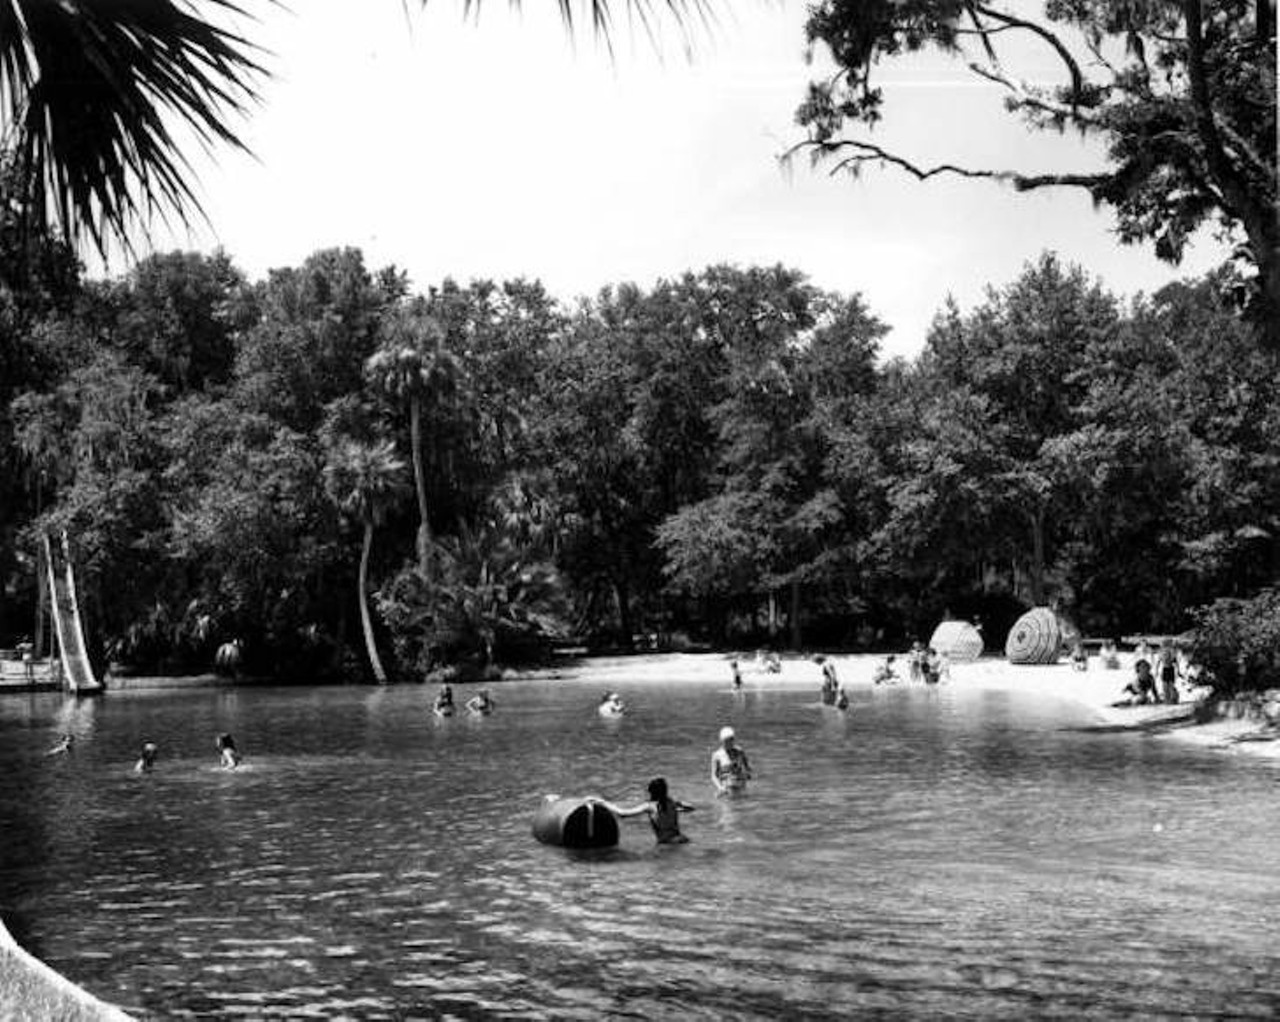 People enjoying a day at Sanlando Springs, 1946.